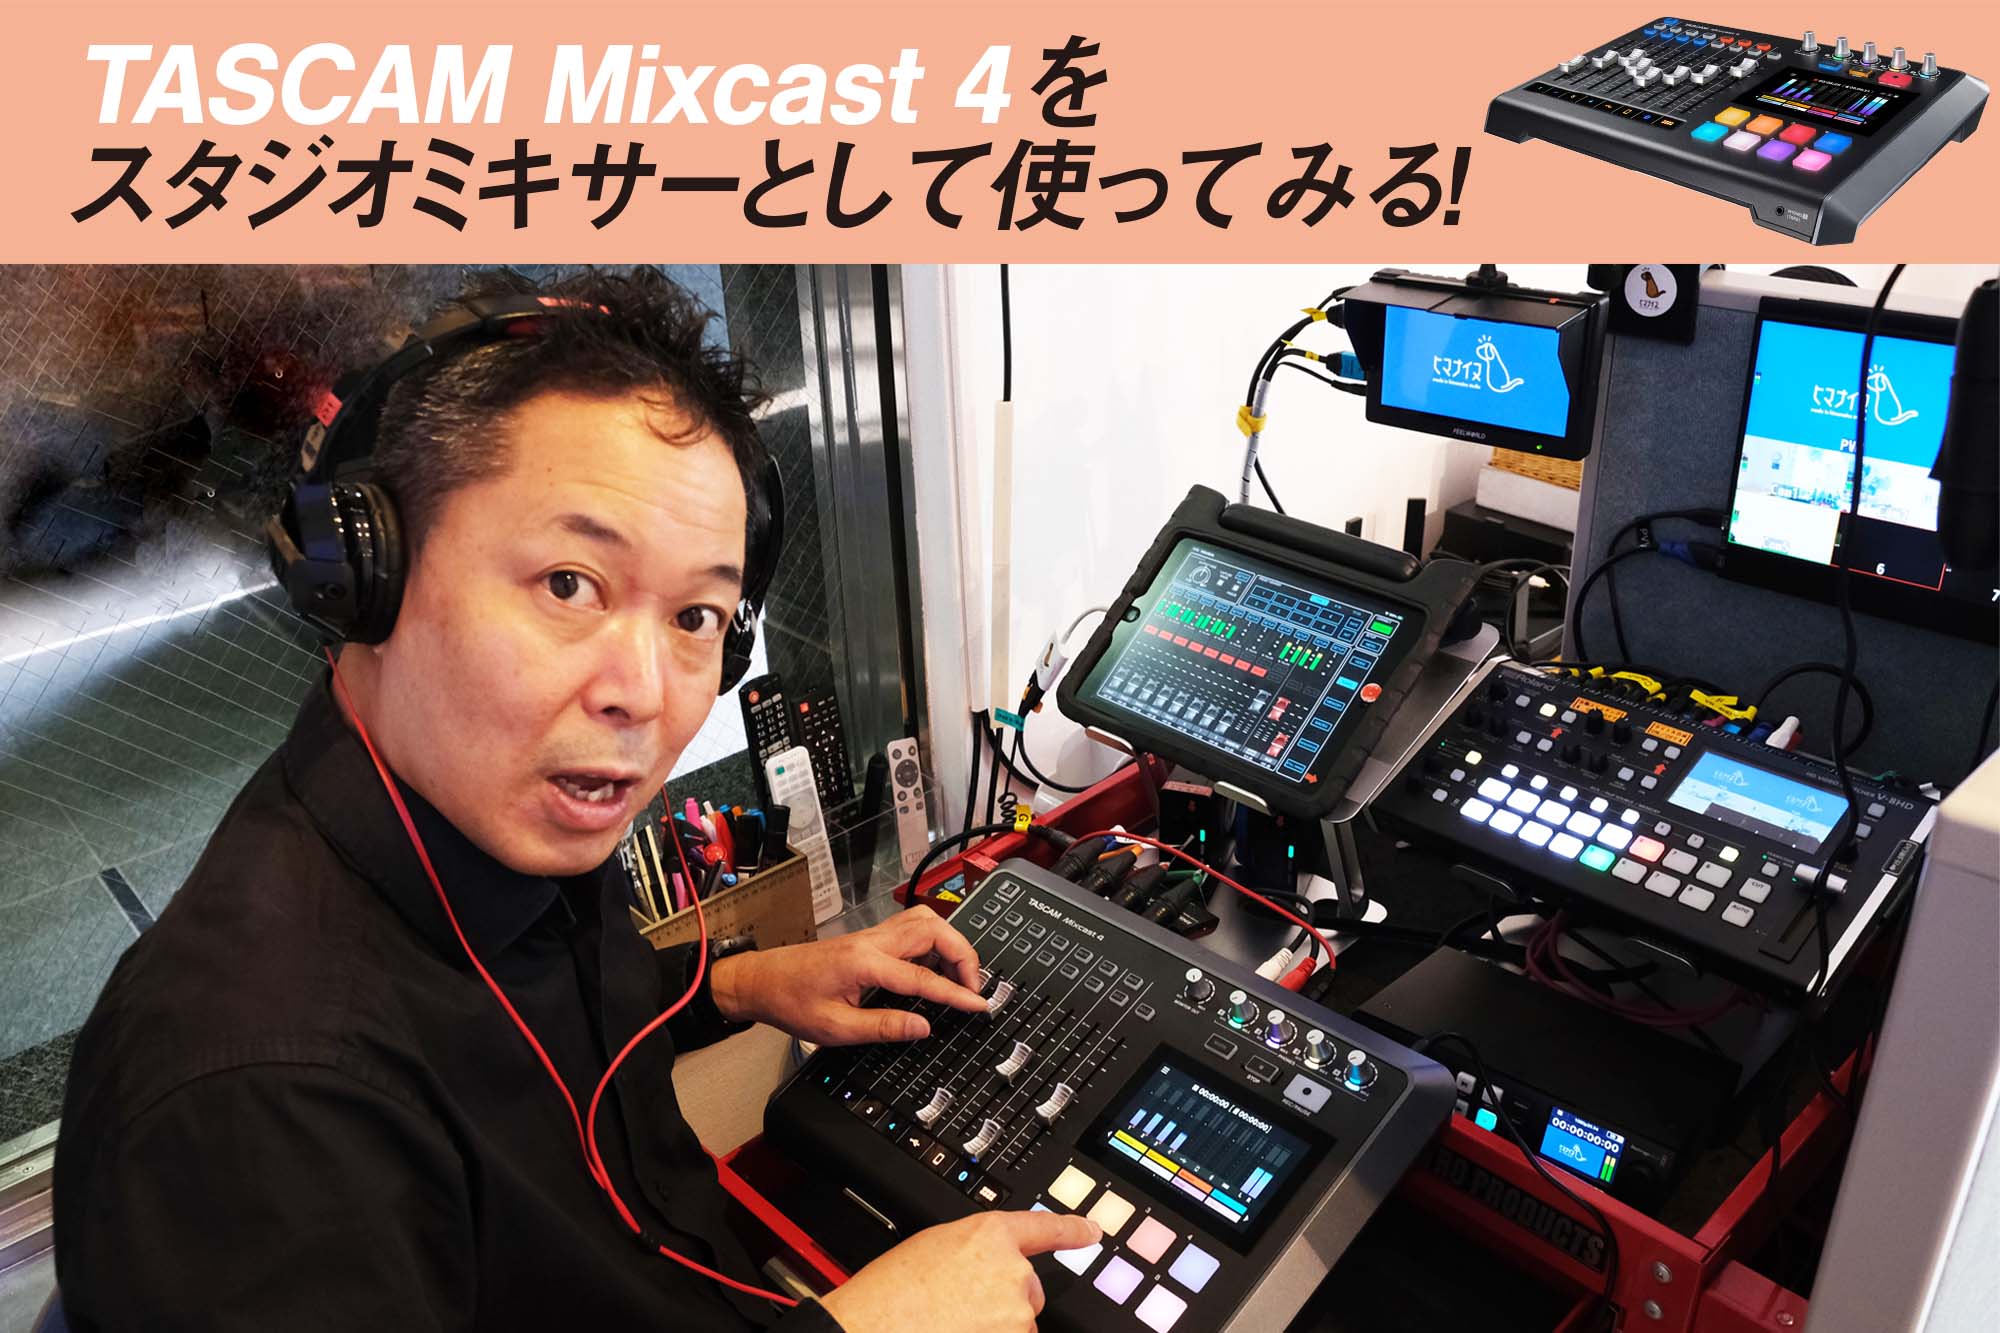 レポート】TASCAM Mixcast 4をスタジオミキサーとして使ってみる